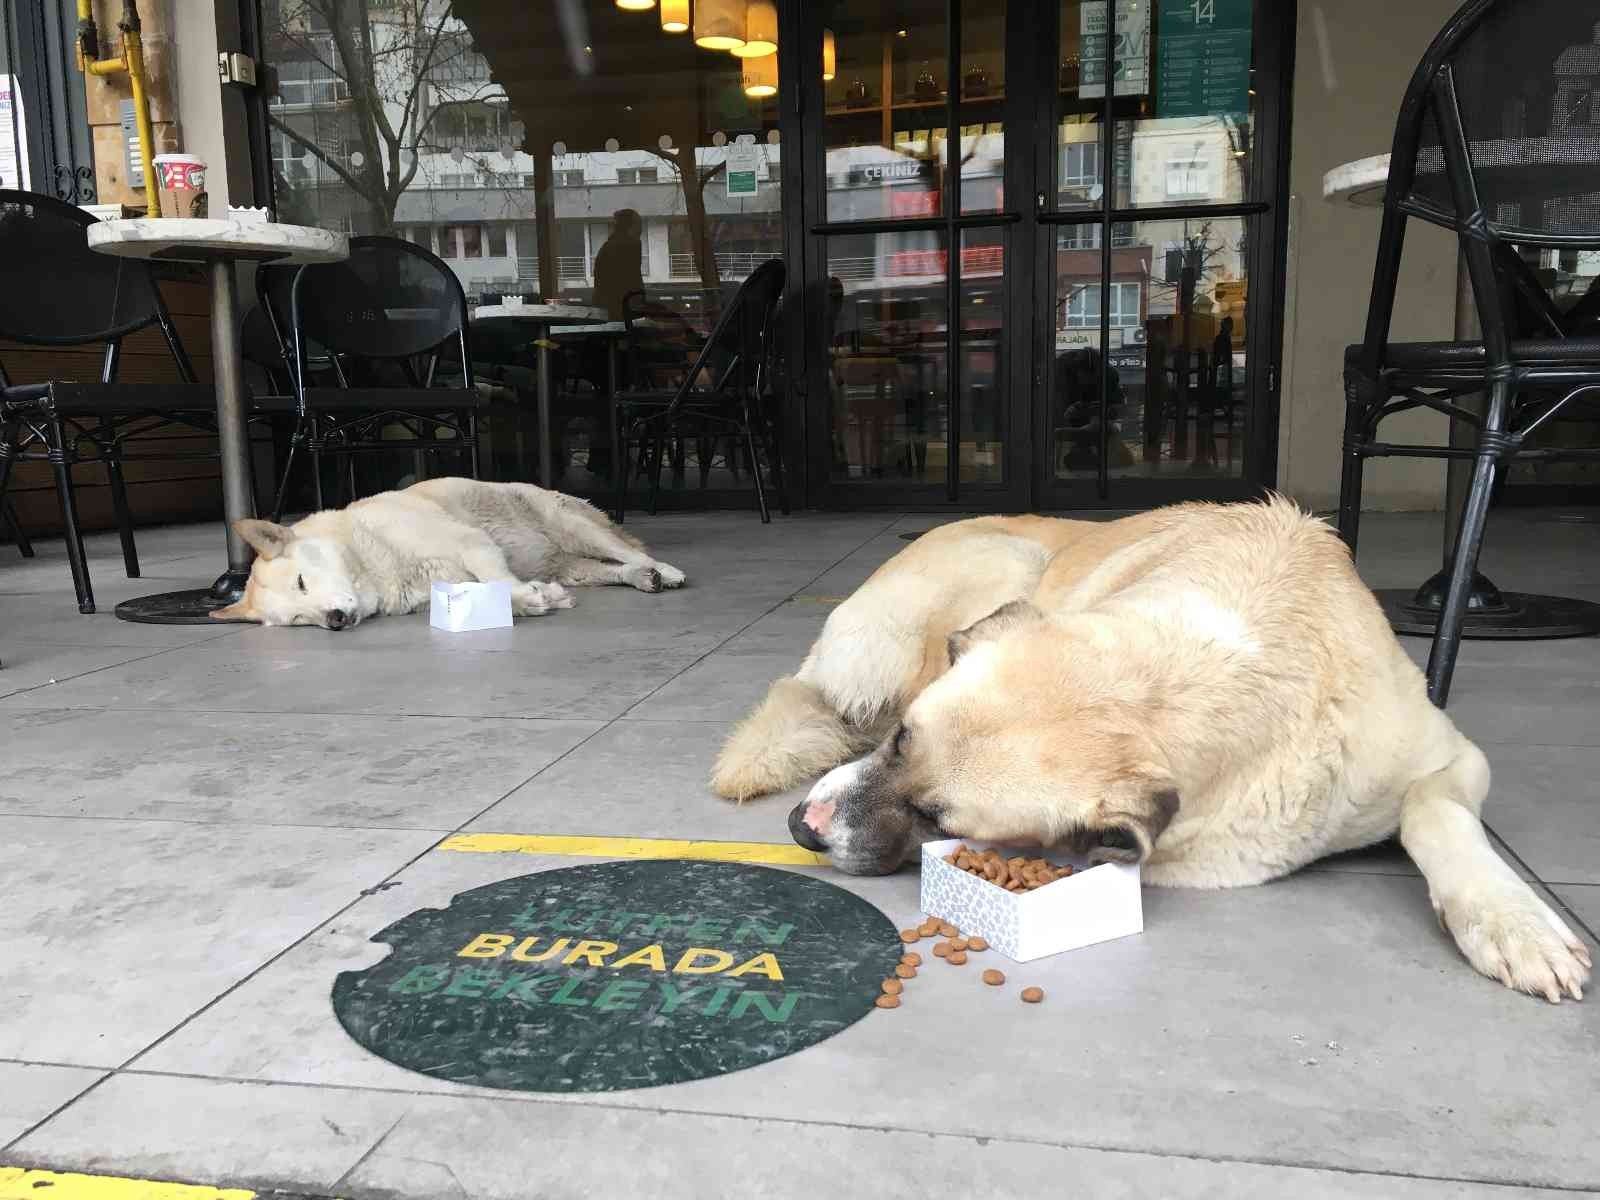 Soğuk havadan etkilenmemek için kafeye sığınan sokak köpekleri iç ısıttı #eskisehir